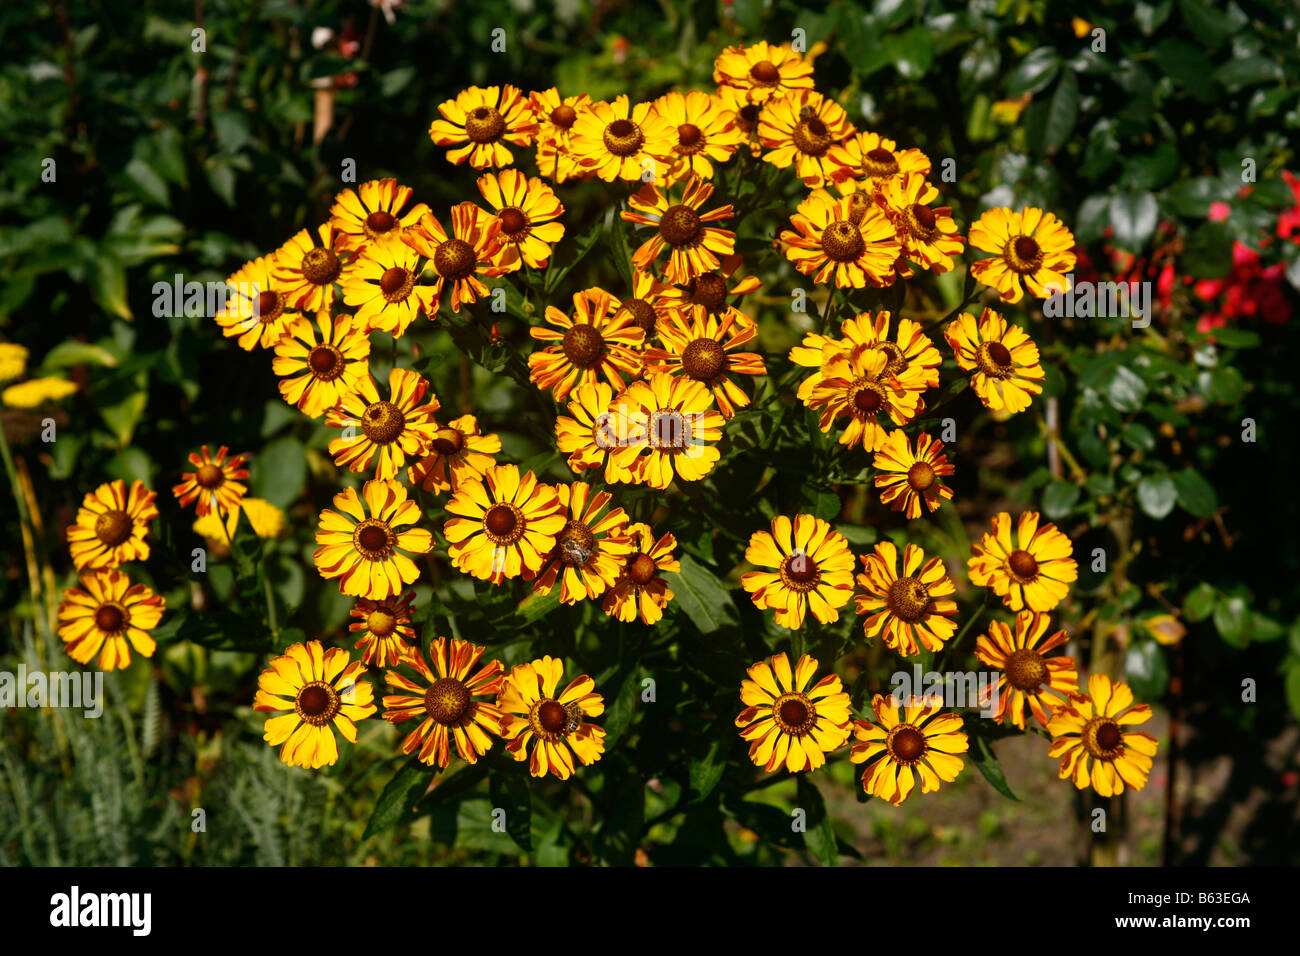 Helenium (Helenium autumnale), variety: Rauchtopas, flowering plant in a garden Stock Photo